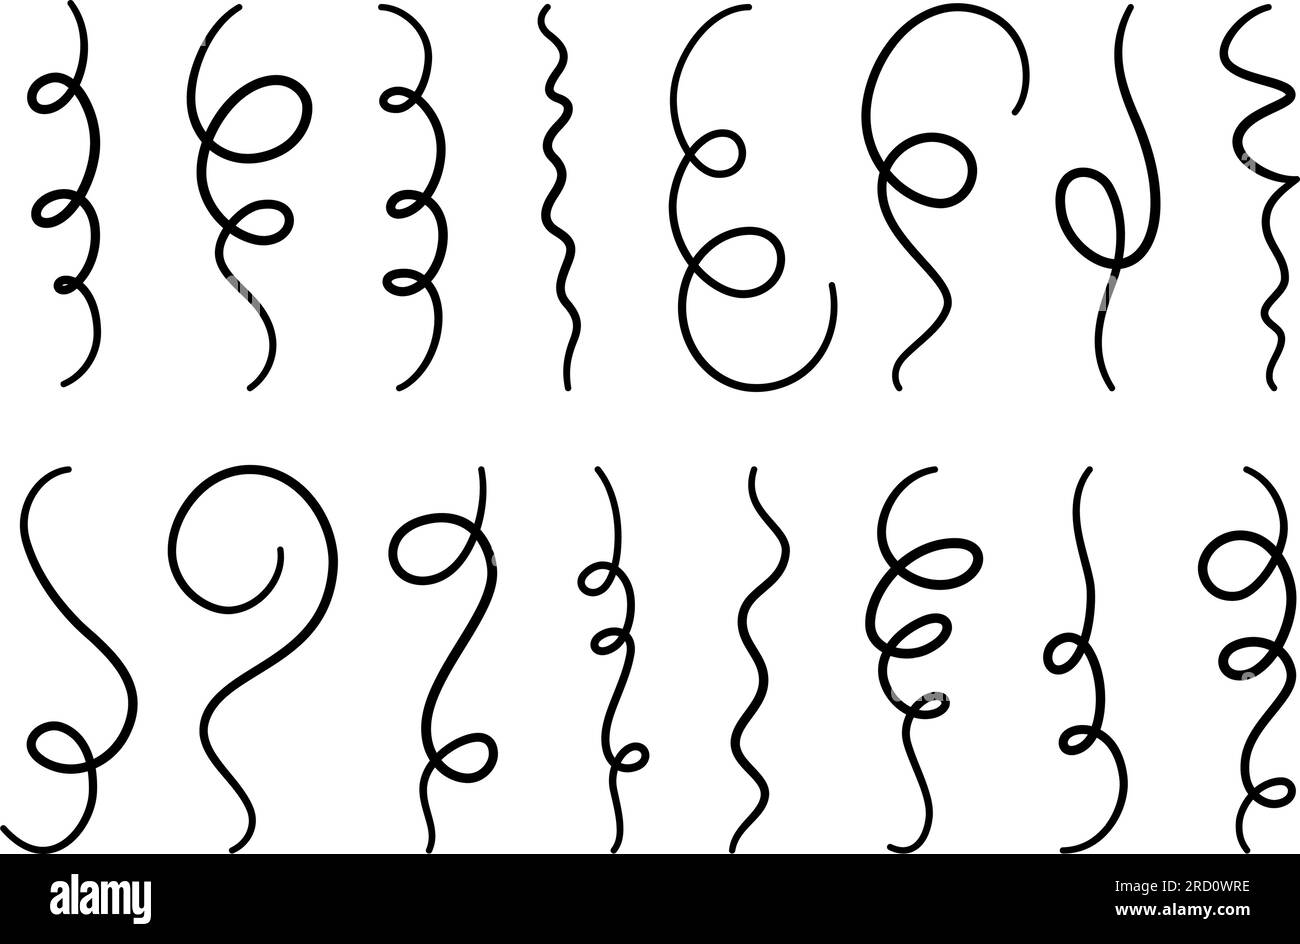 Ensemble de confettis et serpentins Doodle. Collection de confettis tombants dessinés à la main pour la fête de vacances. Doodle party pétard et éléments Popper. Vecteur Illustration de Vecteur